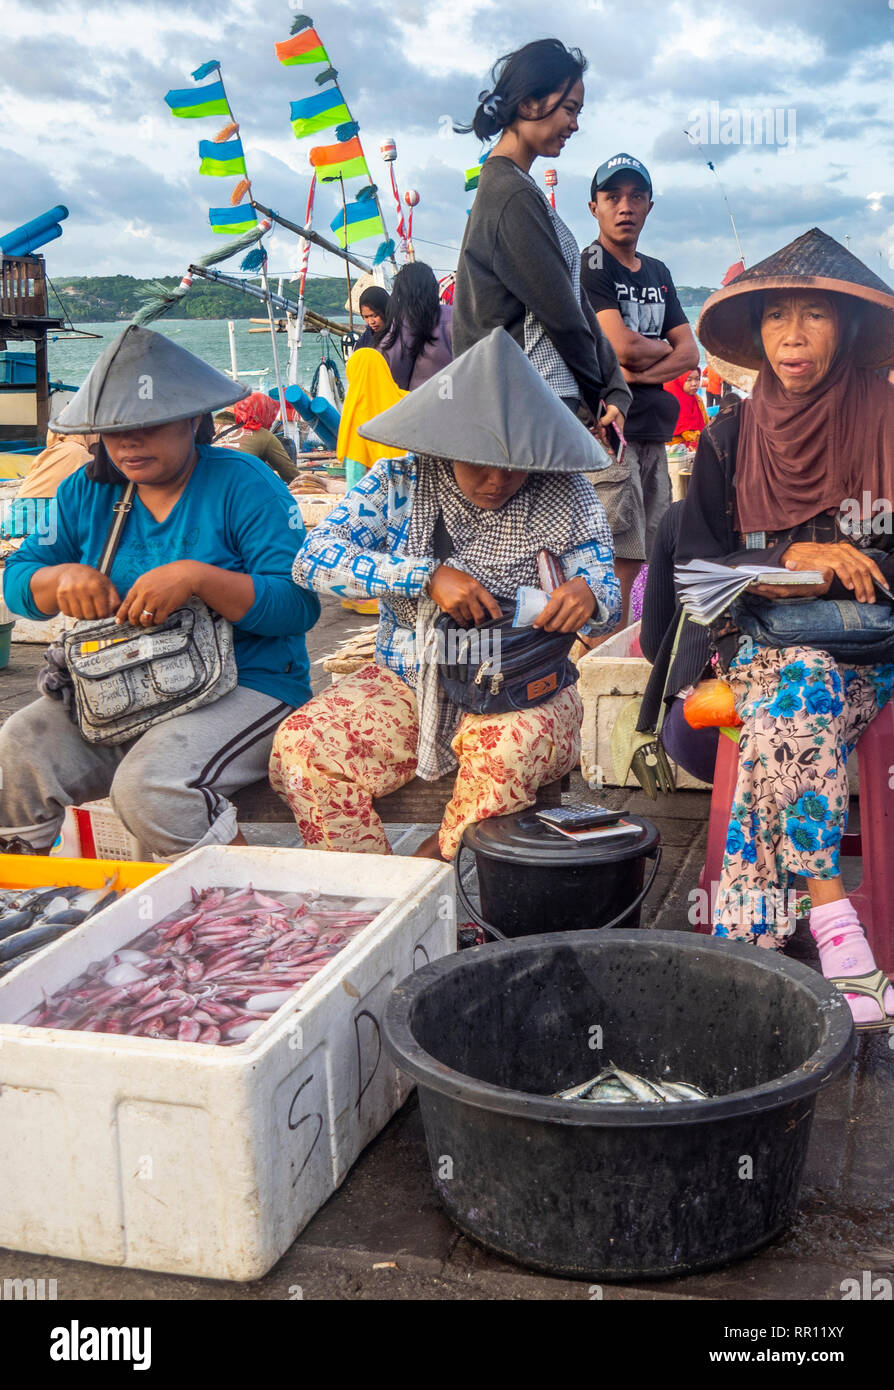 Weibliche Fischhändler tragen konischen Hüten den Verkauf von frischem Fisch am Kedonganan Fischmarkt, Jimbaran Bay Bali Indonesien. Stockfoto